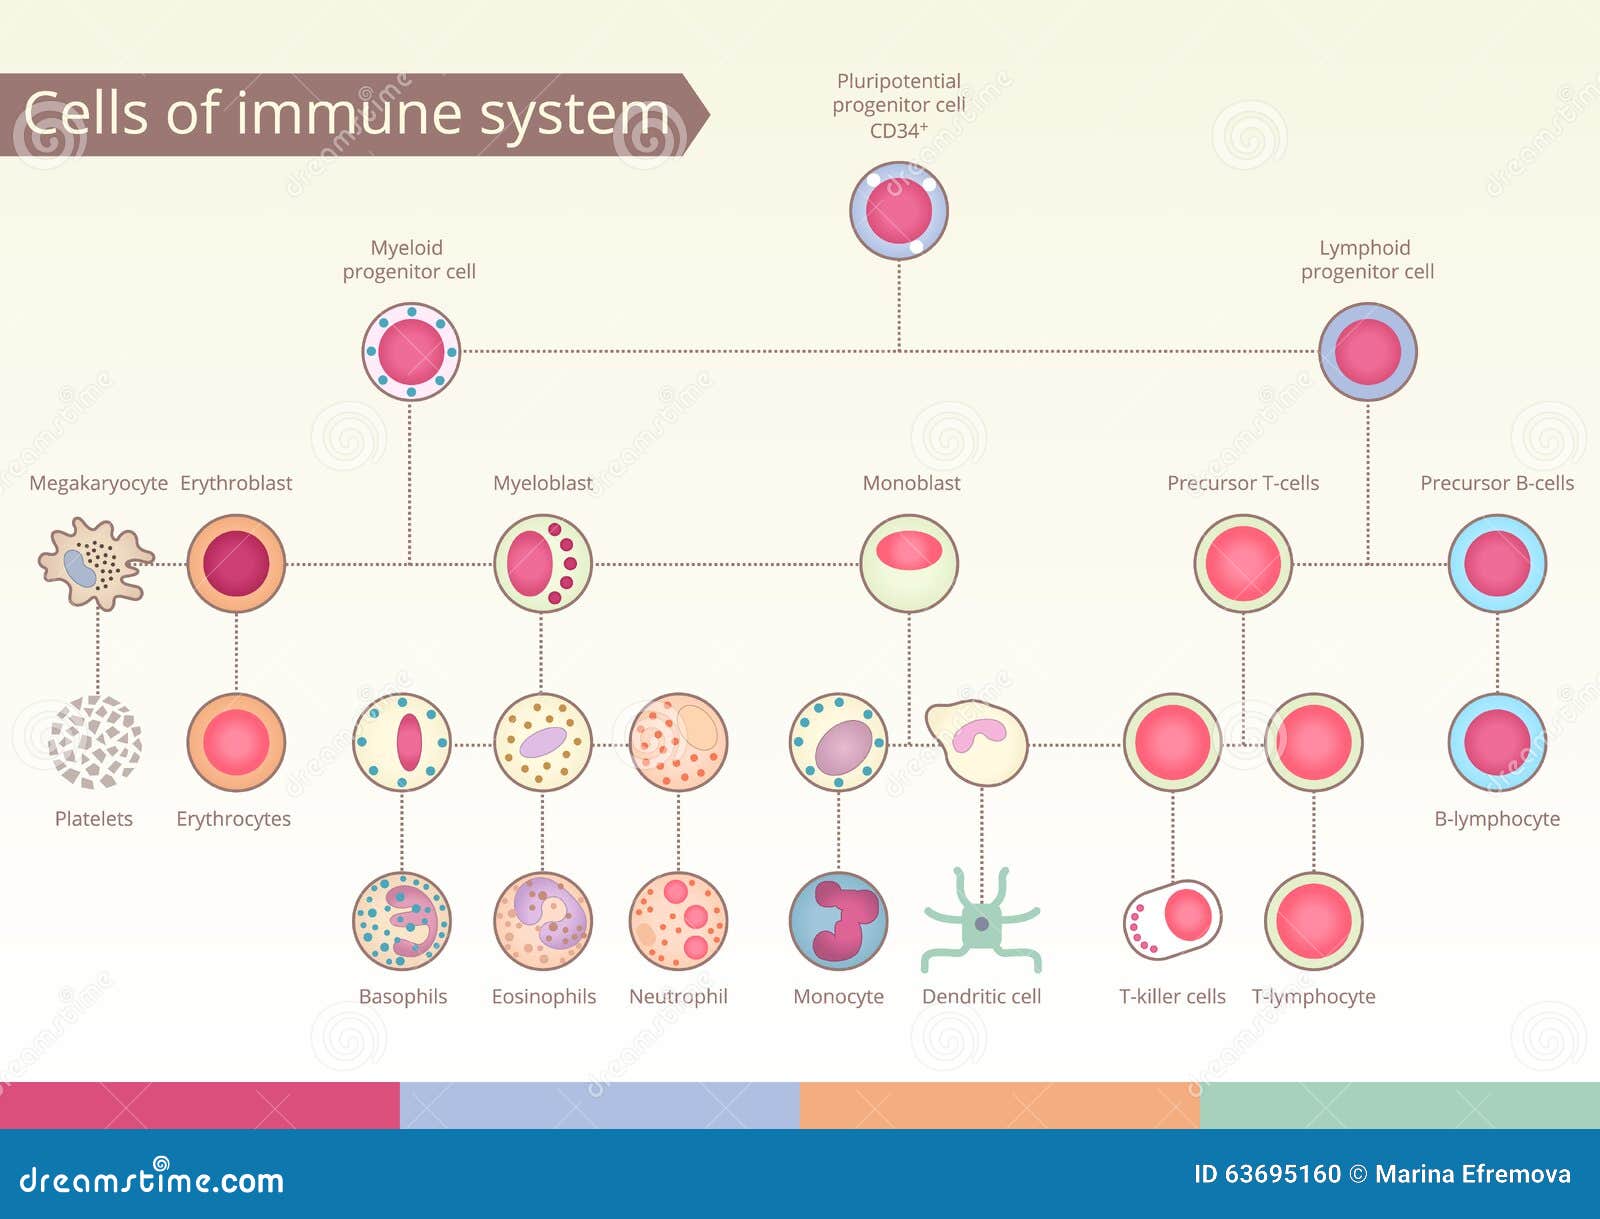 origin of cells of immune system.